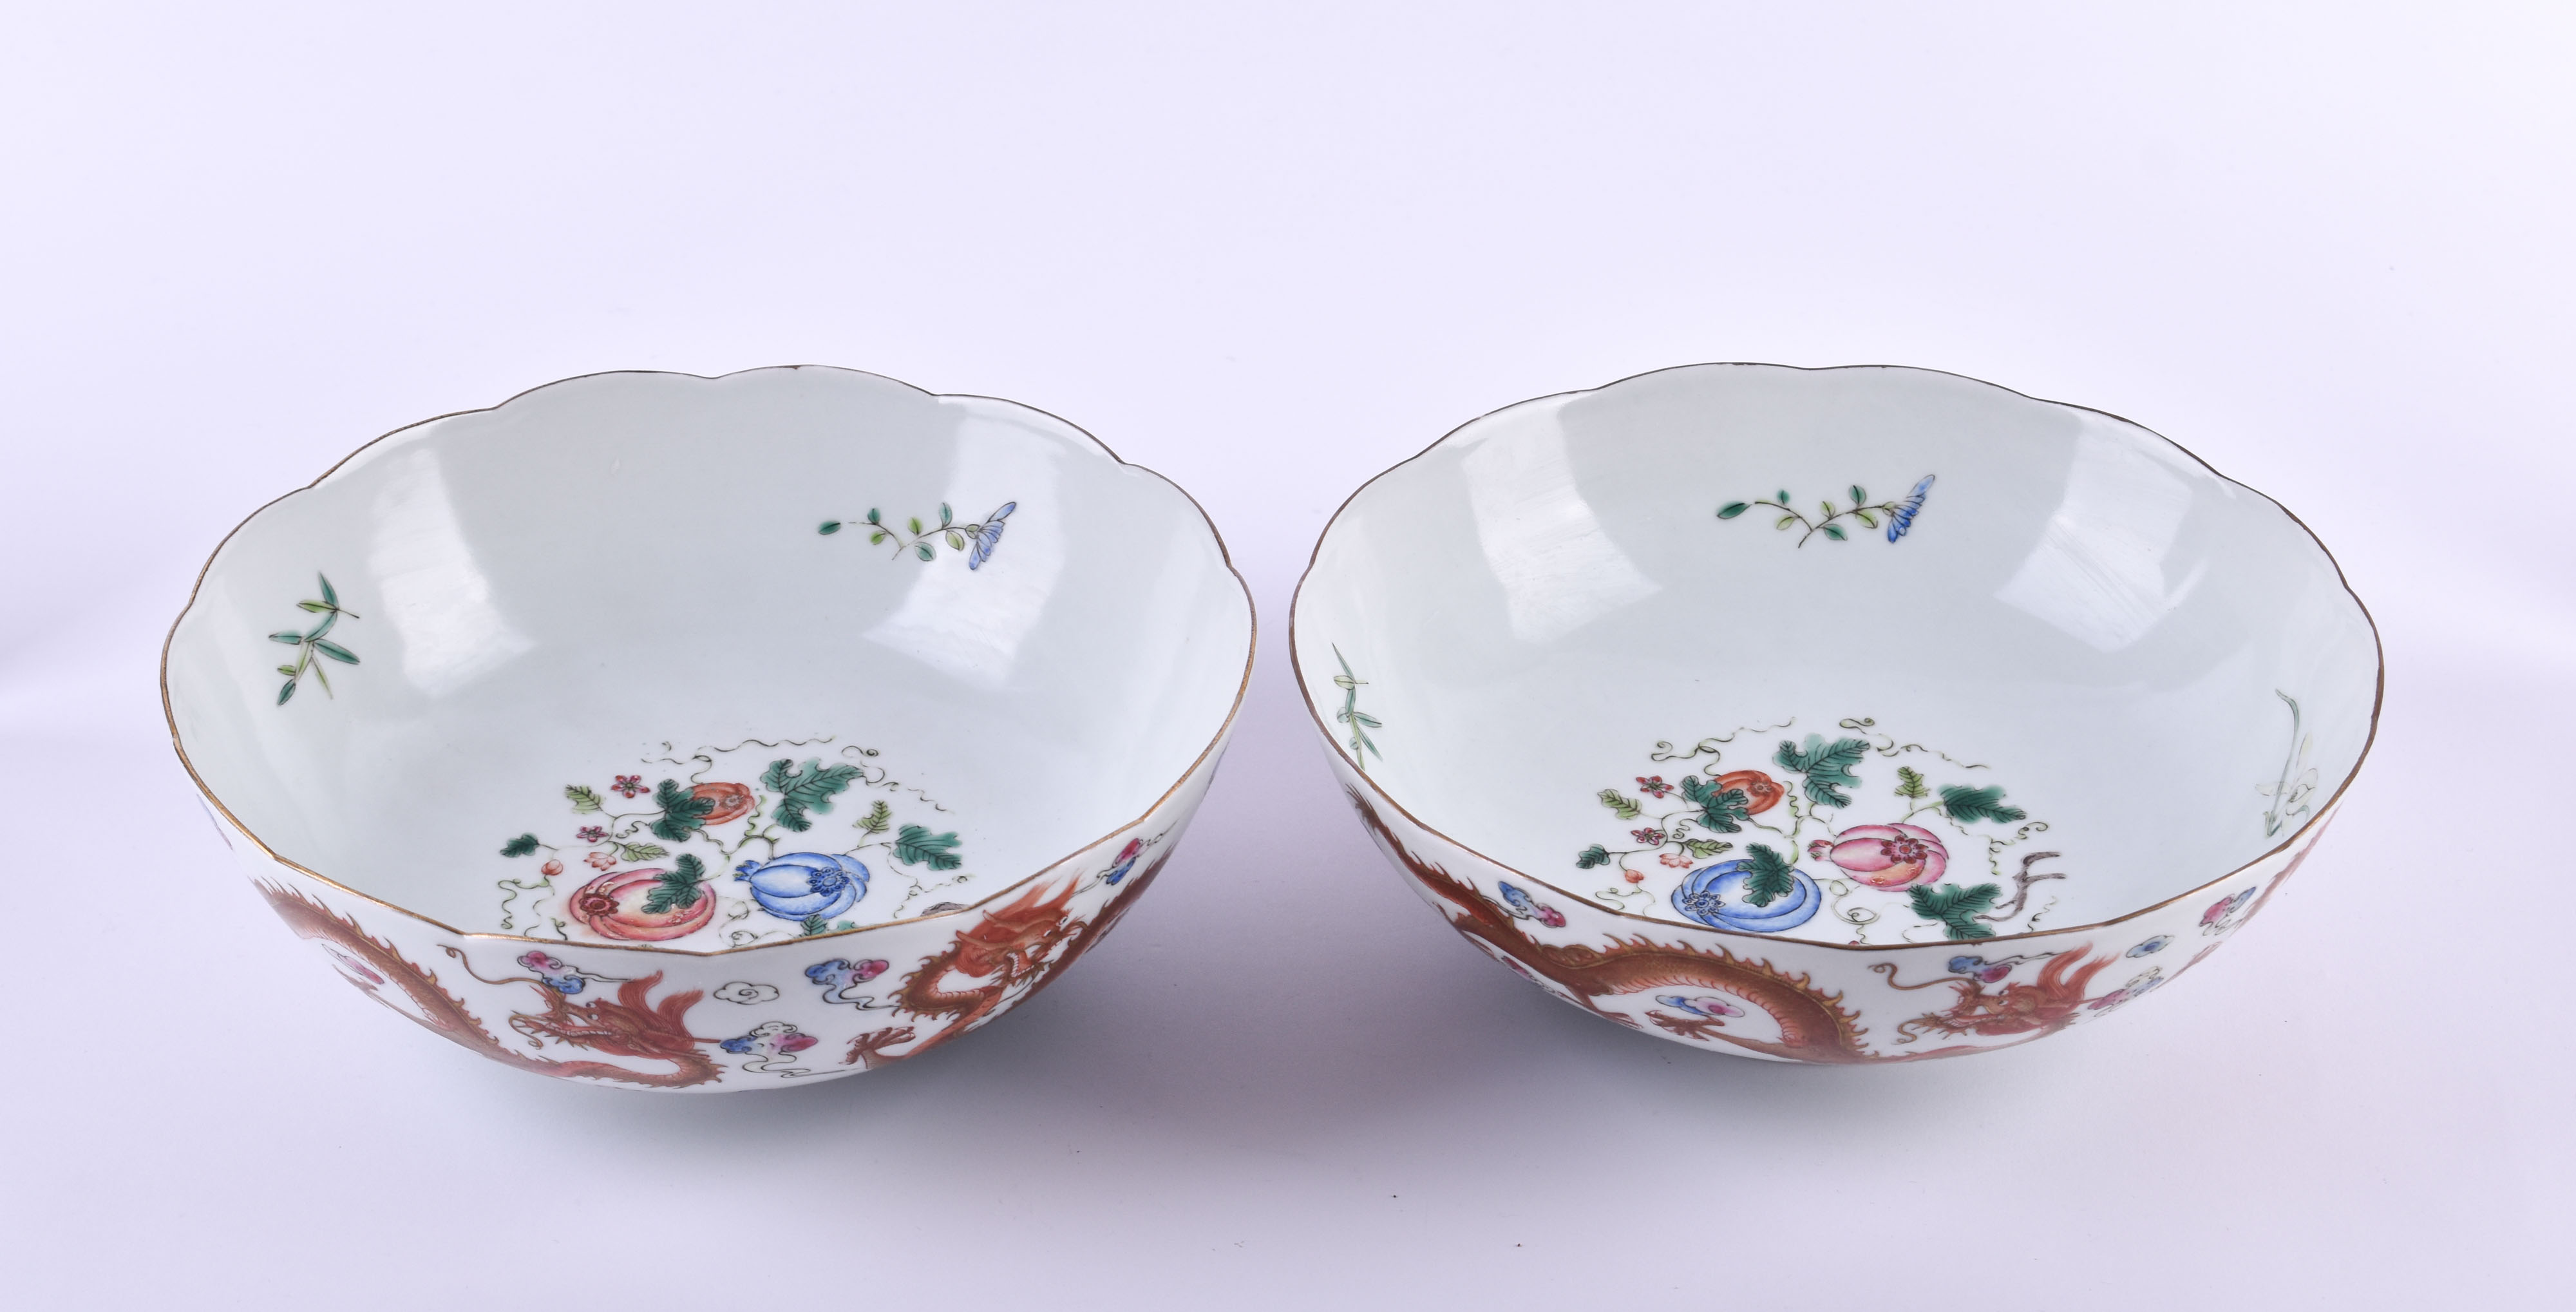  Pair of bowls China Qing dynasty - Image 5 of 12